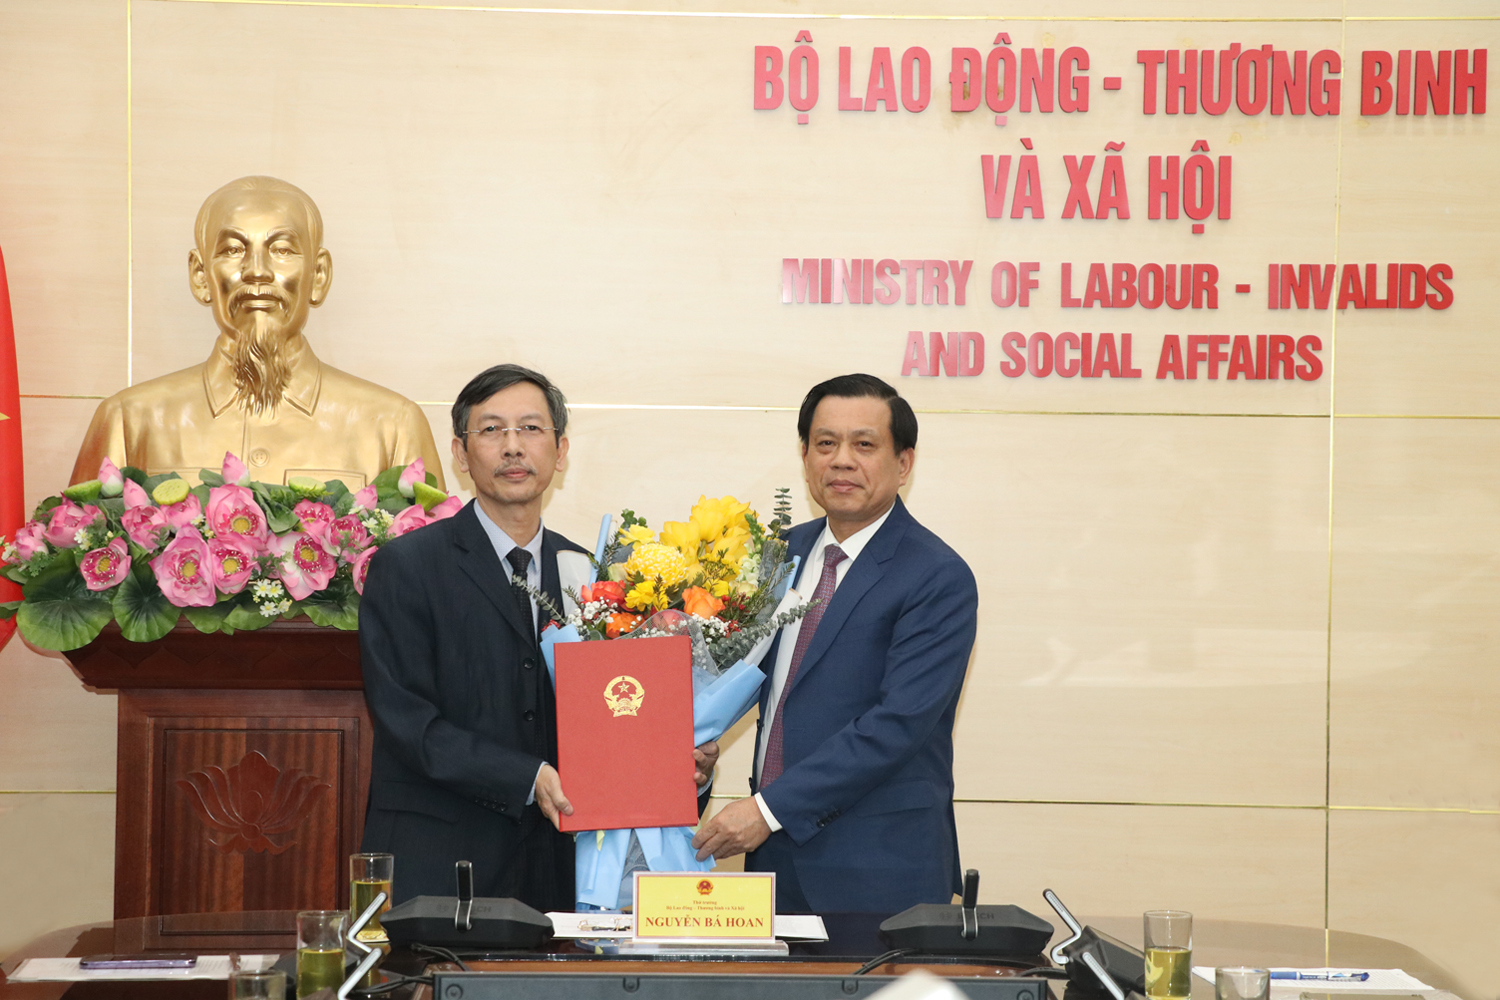 Thứ trưởng Nguyễn Bá Hoan trao Quyết định nghỉ hưởng chế độ bảo hiểm xã hội tới Phó Vụ trưởng Vụ Kế hoạch - Tài chính.